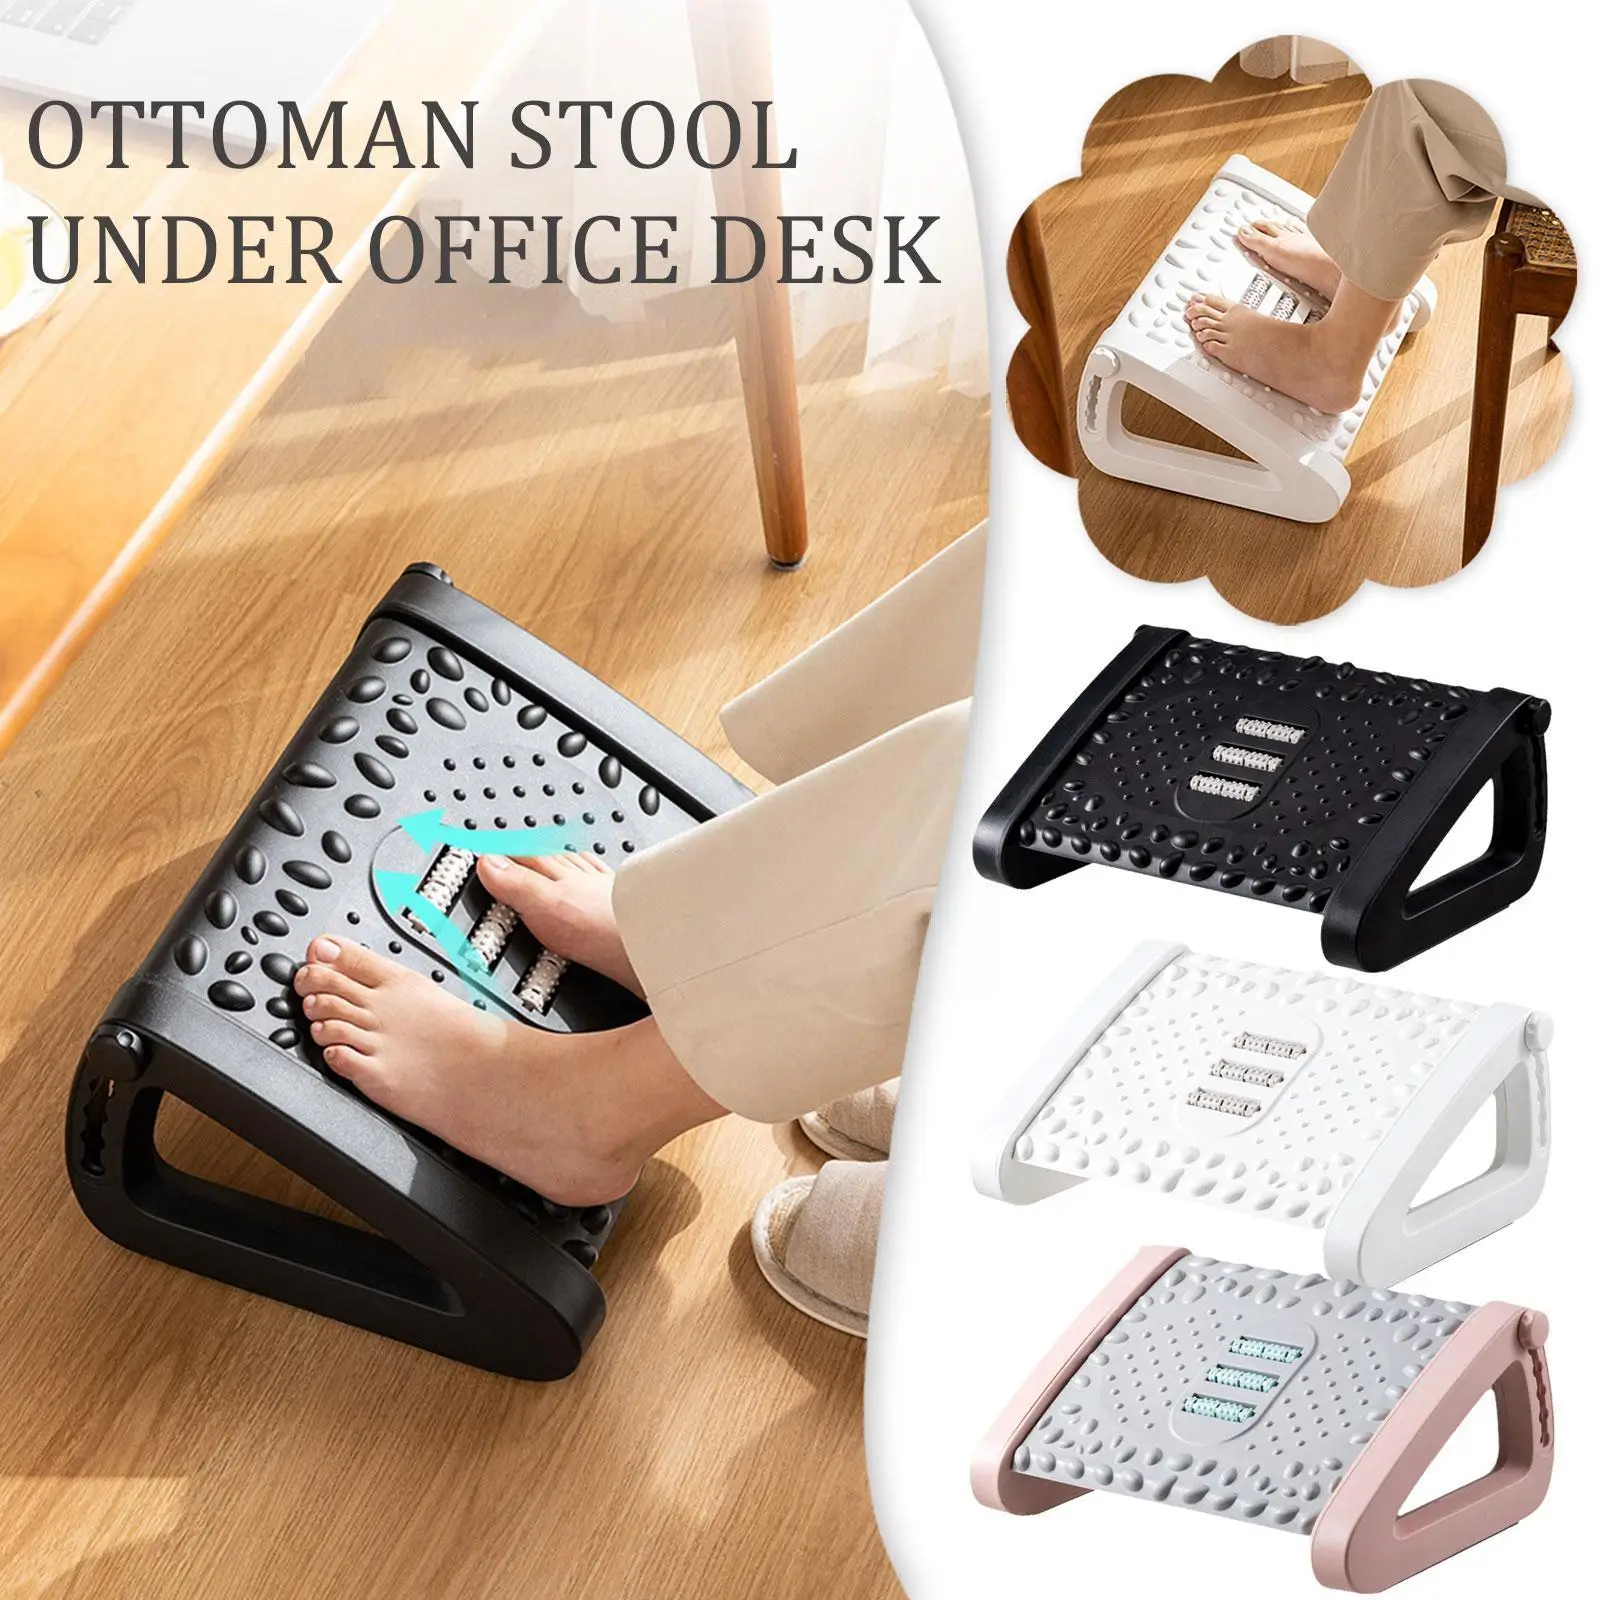 

Relief Foot Rest Solemassage Comfort Adjustable Footrest For Under Desk Office Footrest Massage Rollers Work Footrests F0e2